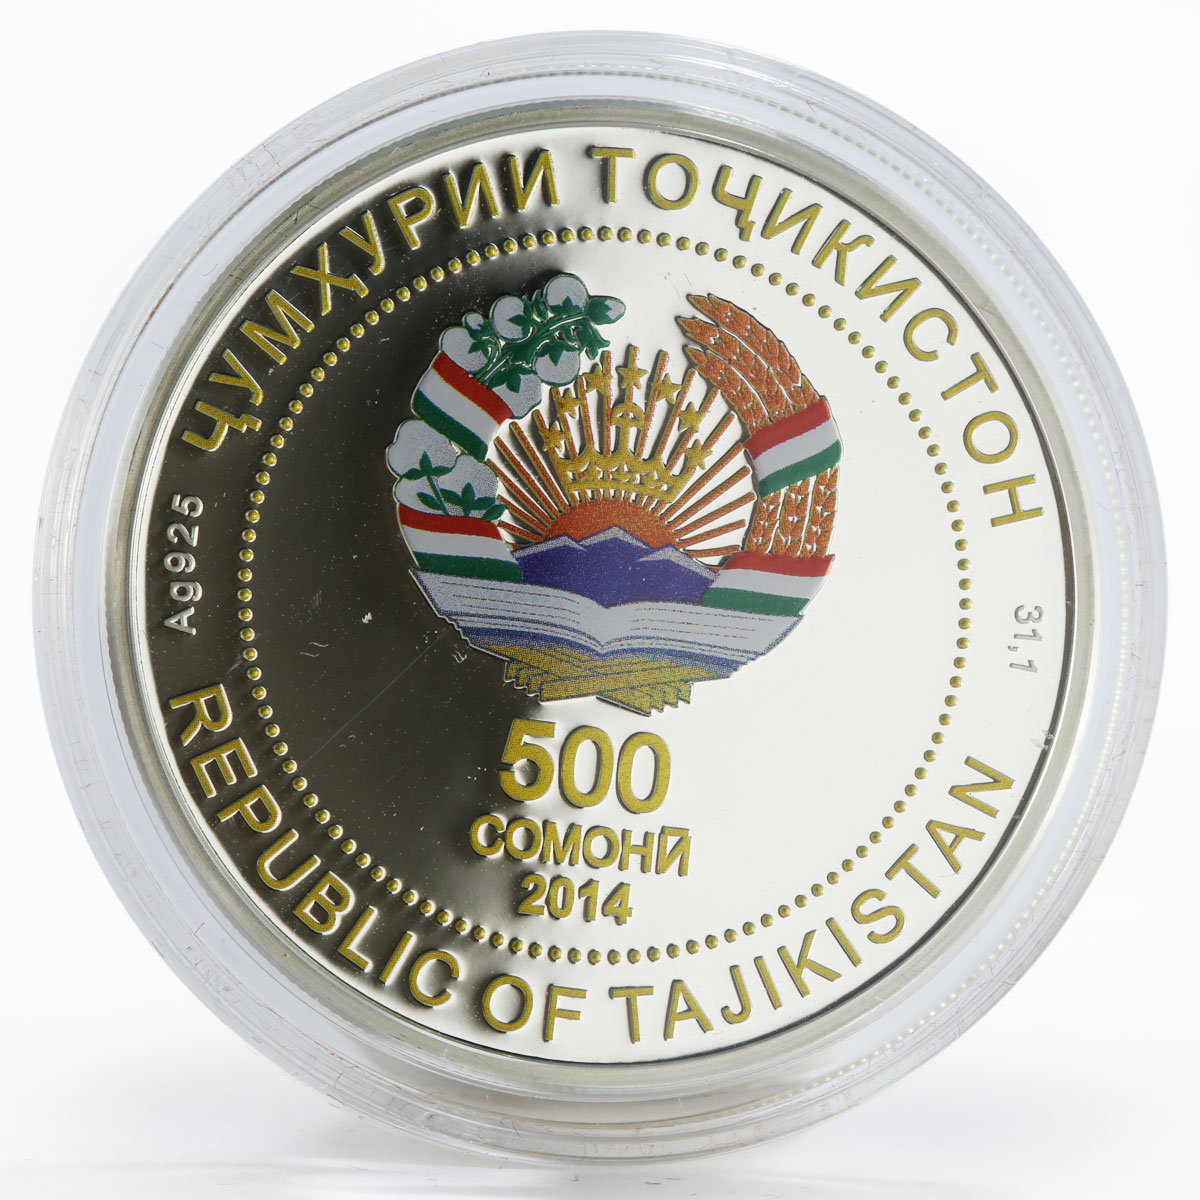 Tajikistan 500 somoni 20th Anniversary of Constitution colored silver coin 2014